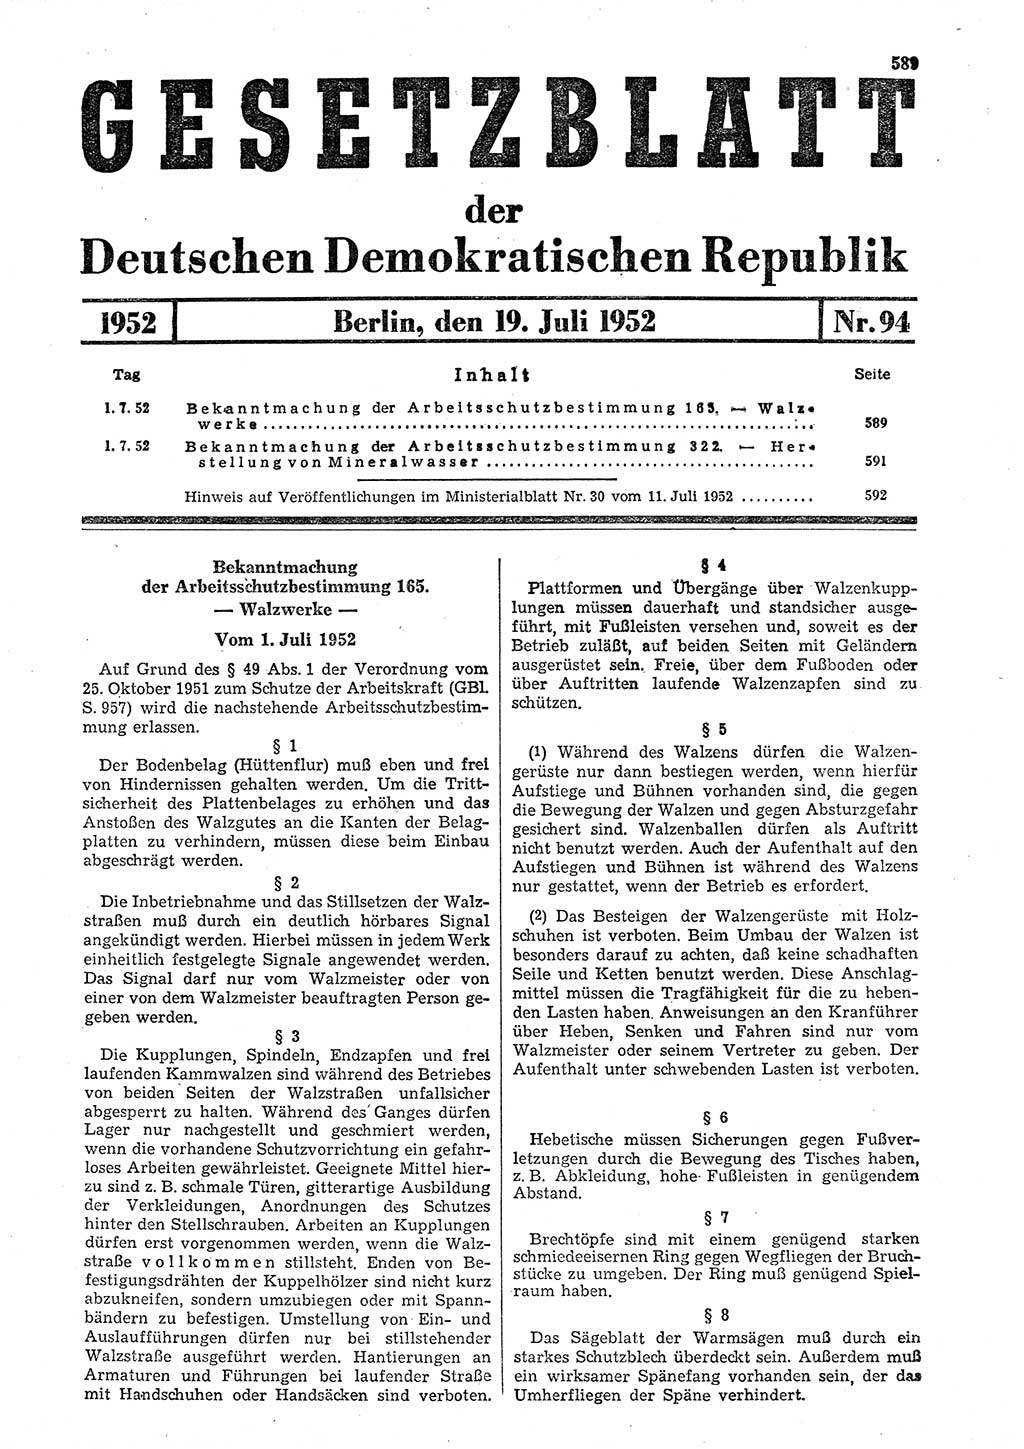 Gesetzblatt (GBl.) der Deutschen Demokratischen Republik (DDR) 1952, Seite 589 (GBl. DDR 1952, S. 589)